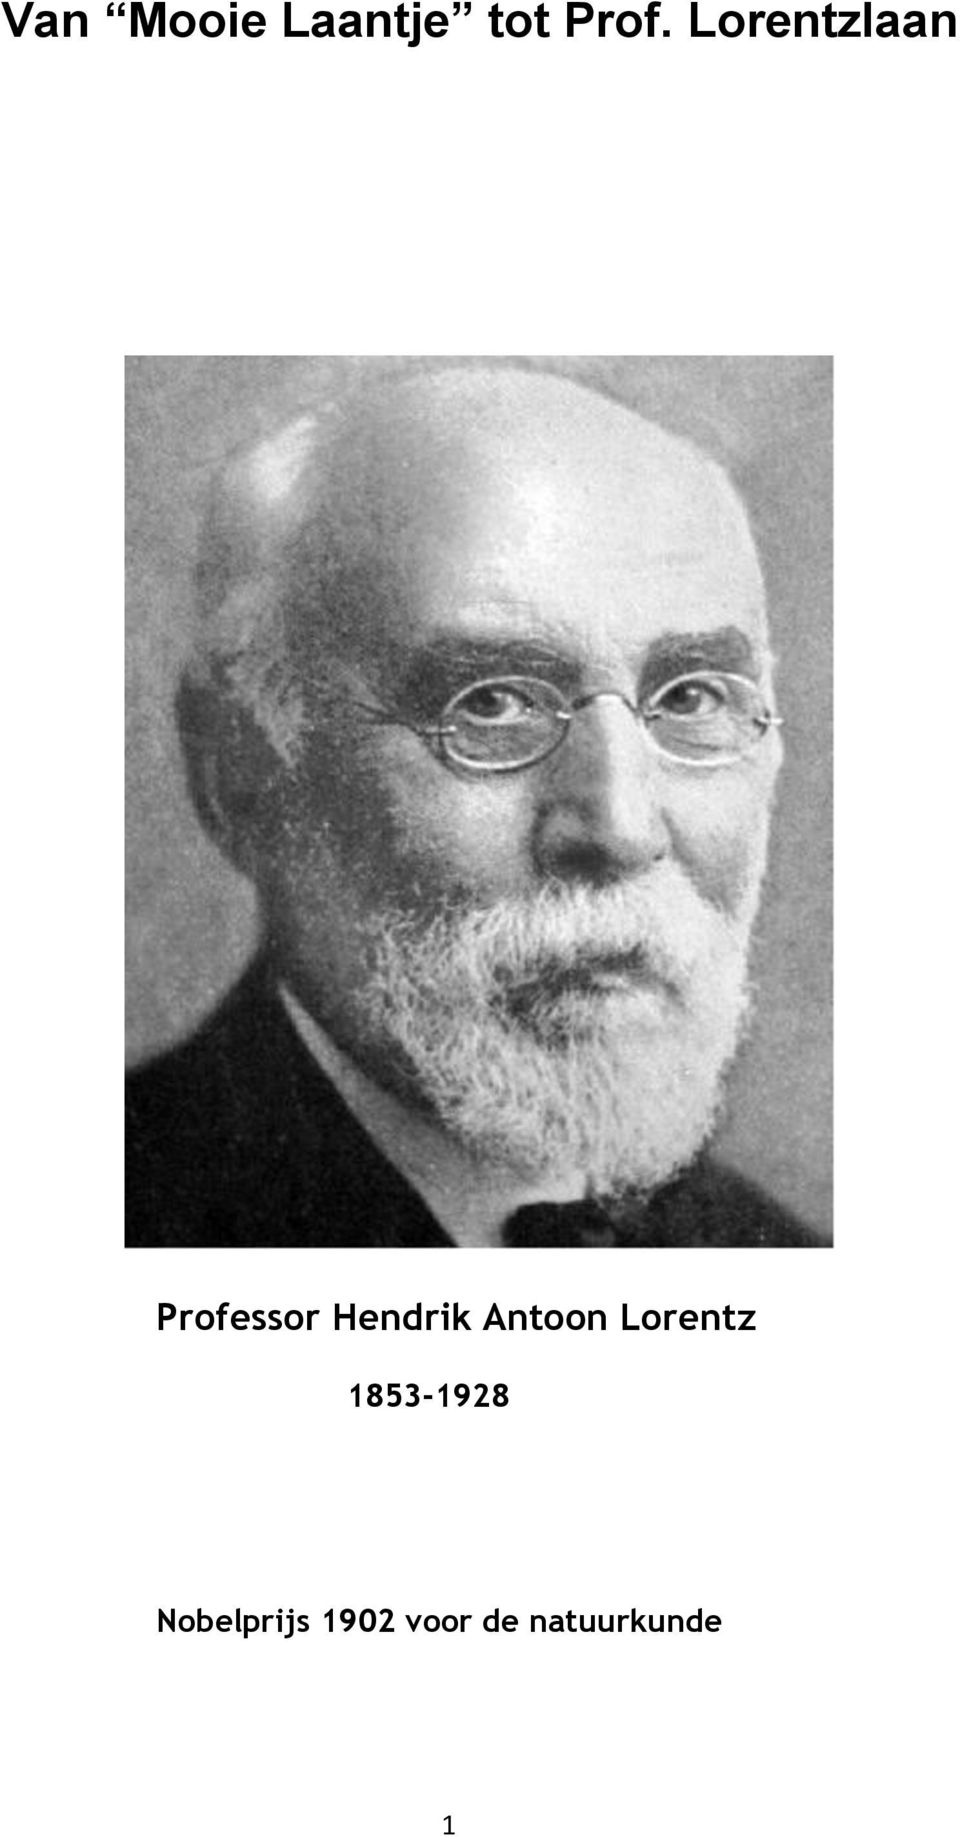 Antoon Lorentz 1853-1928